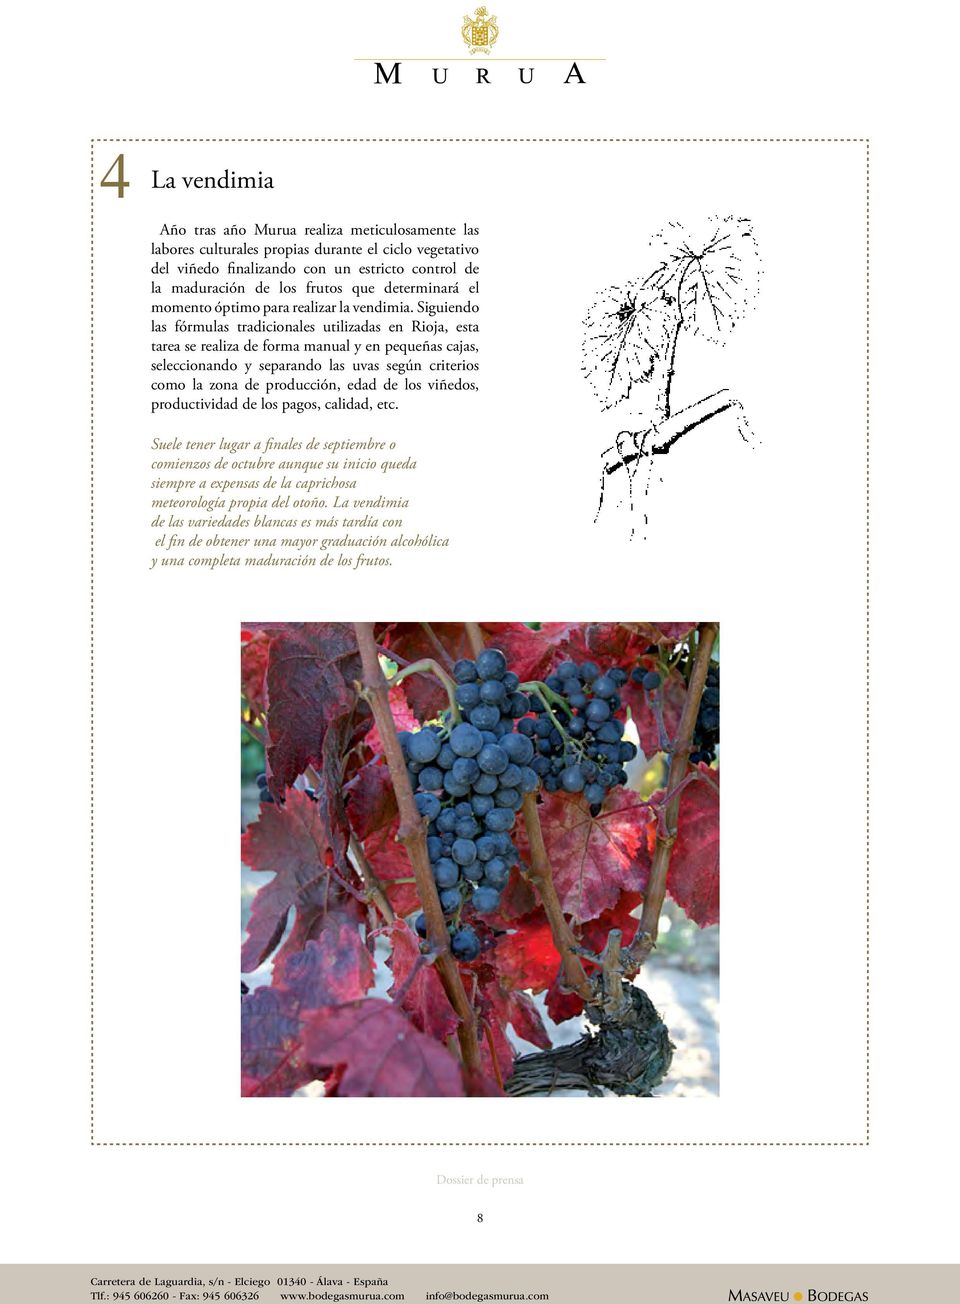 Siguiendo las fórmulas tradicionales utilizadas en Rioja, esta tarea se realiza de forma manual y en pequeñas cajas, seleccionando y separando las uvas según criterios como la zona de producción,